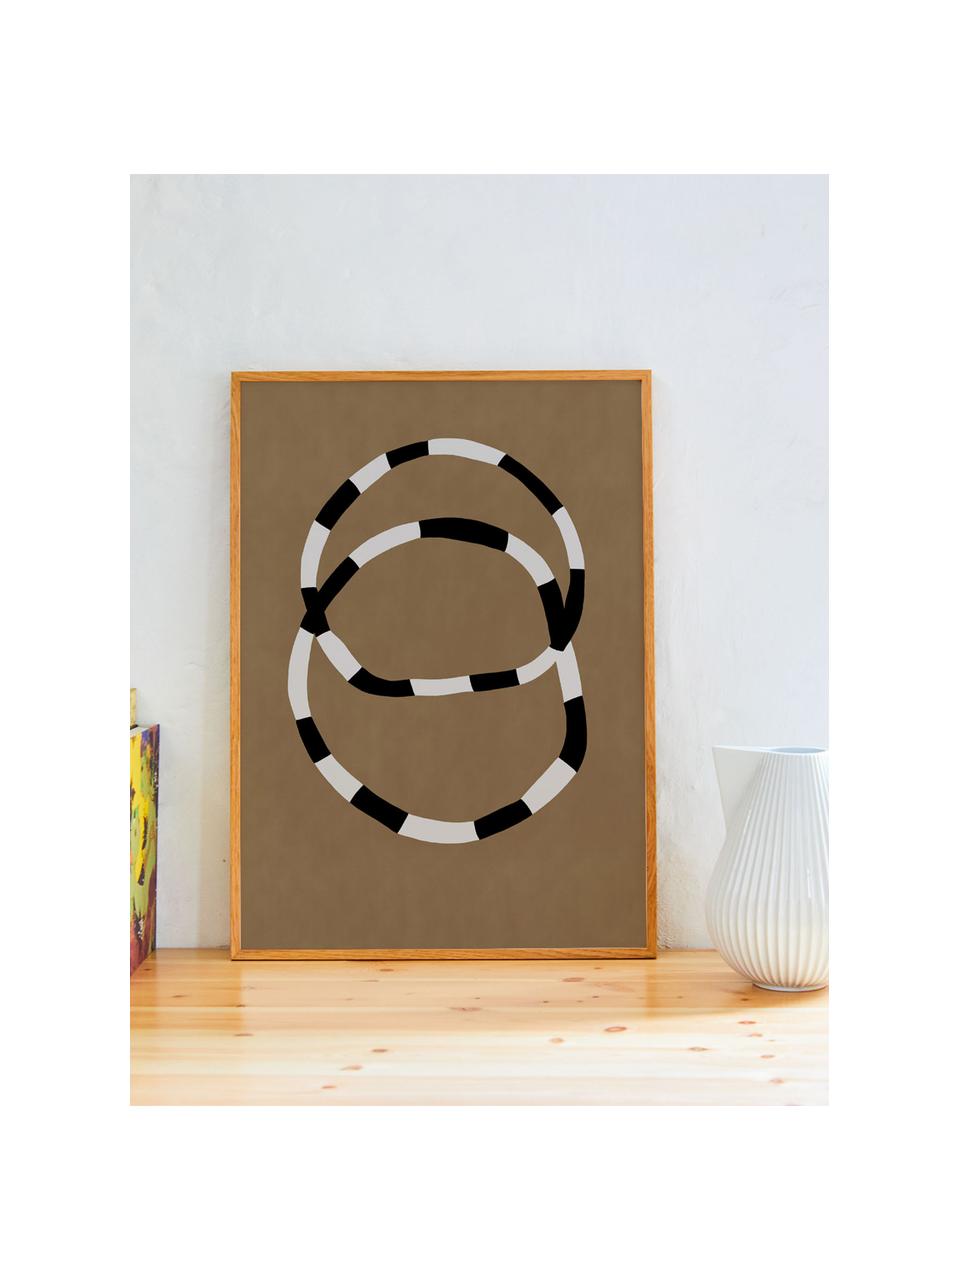 Plagát Bracelets, 210 g matný papier Hahnemühle, digitálna tlač s 10 farbami odolnými voči UV žiareniu, Terakotová, čierna, lomená biela, Š 30 x V 40 cm